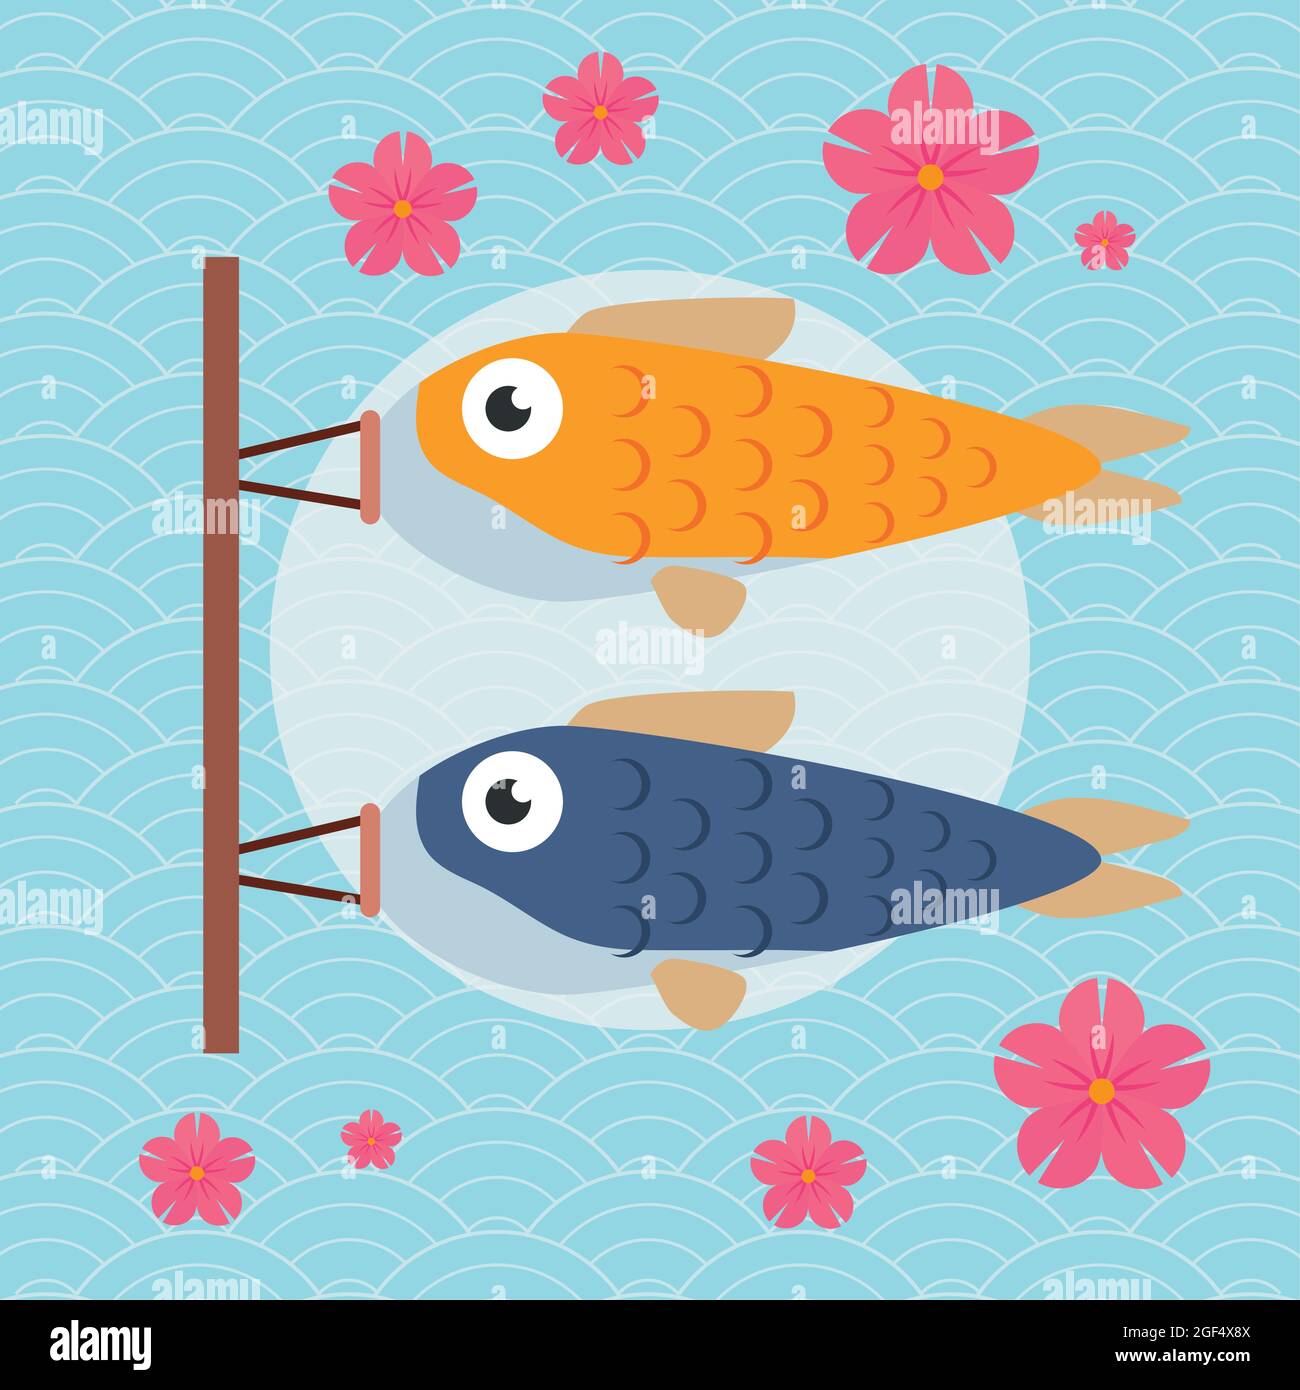 japanese fish koi flag koinobori Stock Vector